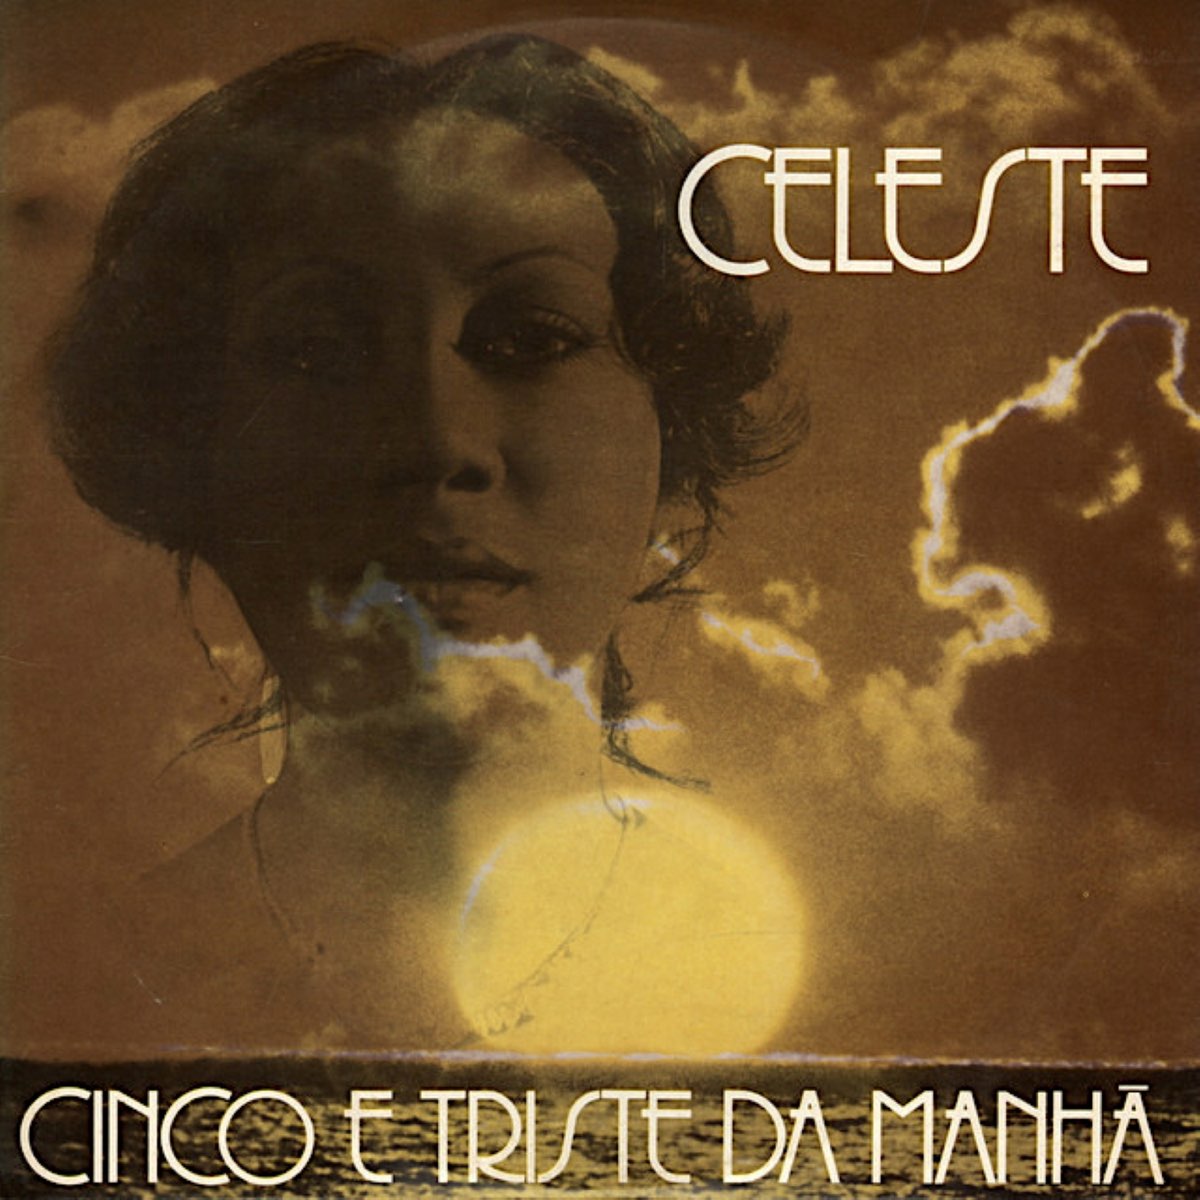 Cinco e Triste da Manhã - Album by Celeste - Apple Music